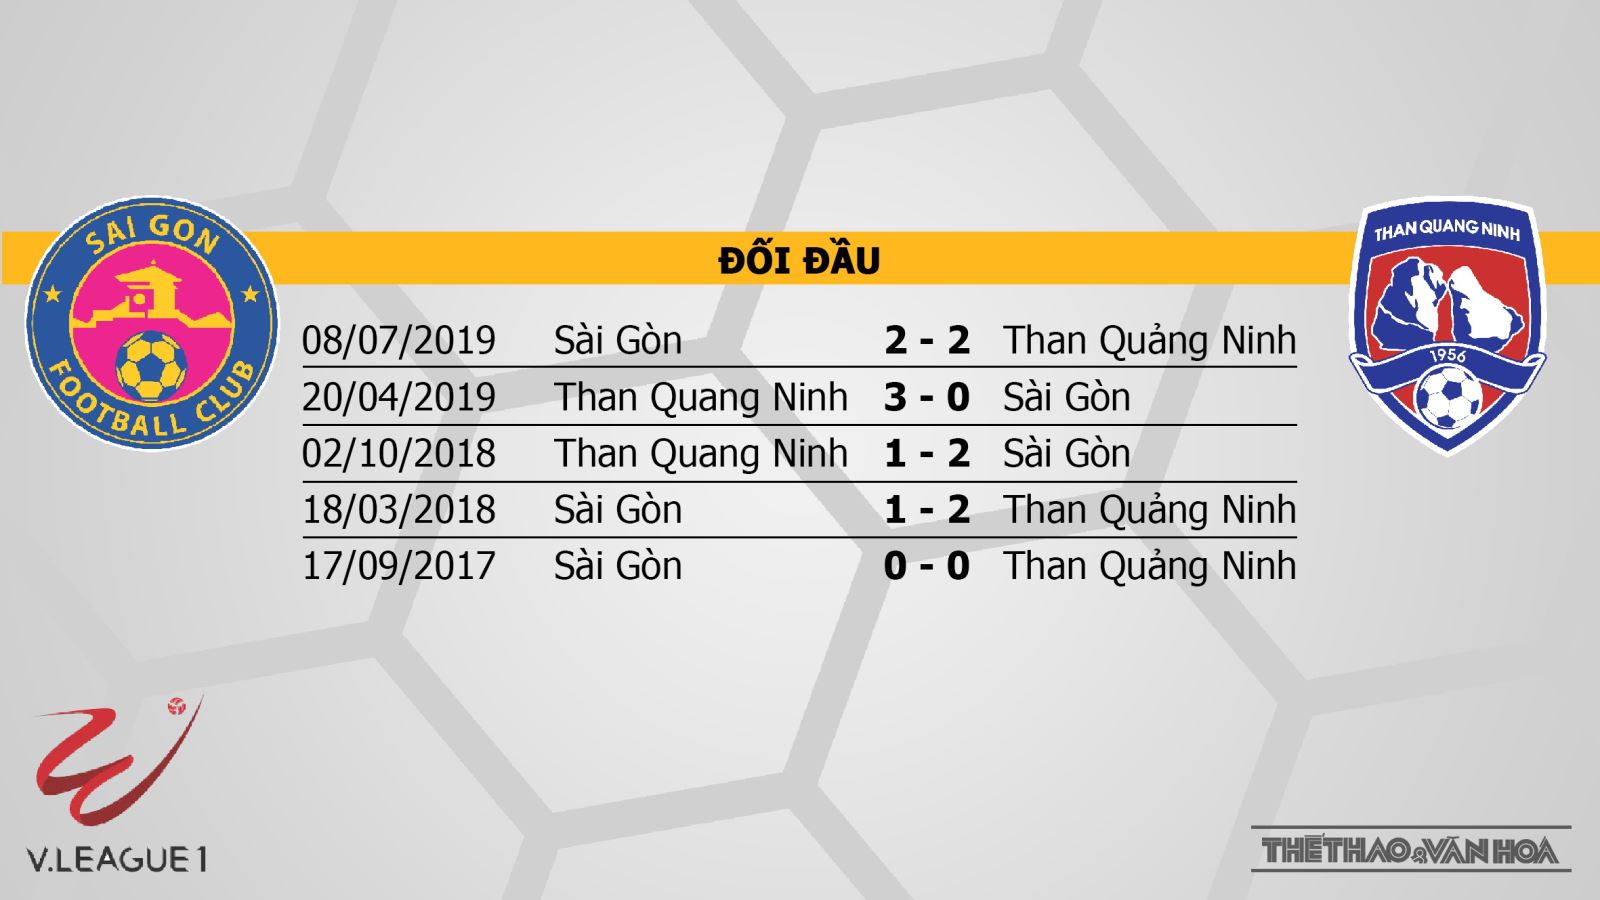 Sài Gòn vs Than Quảng Ninh, Sài Gòn, Than Quảng Ninh, trực tiếp bóng đá Sài Gòn vs Than Quảng Ninh, nhận định bóng đá bóng đá, kèo bóng đá, nhận định Sài Gòn vs Than Quảng Ninh